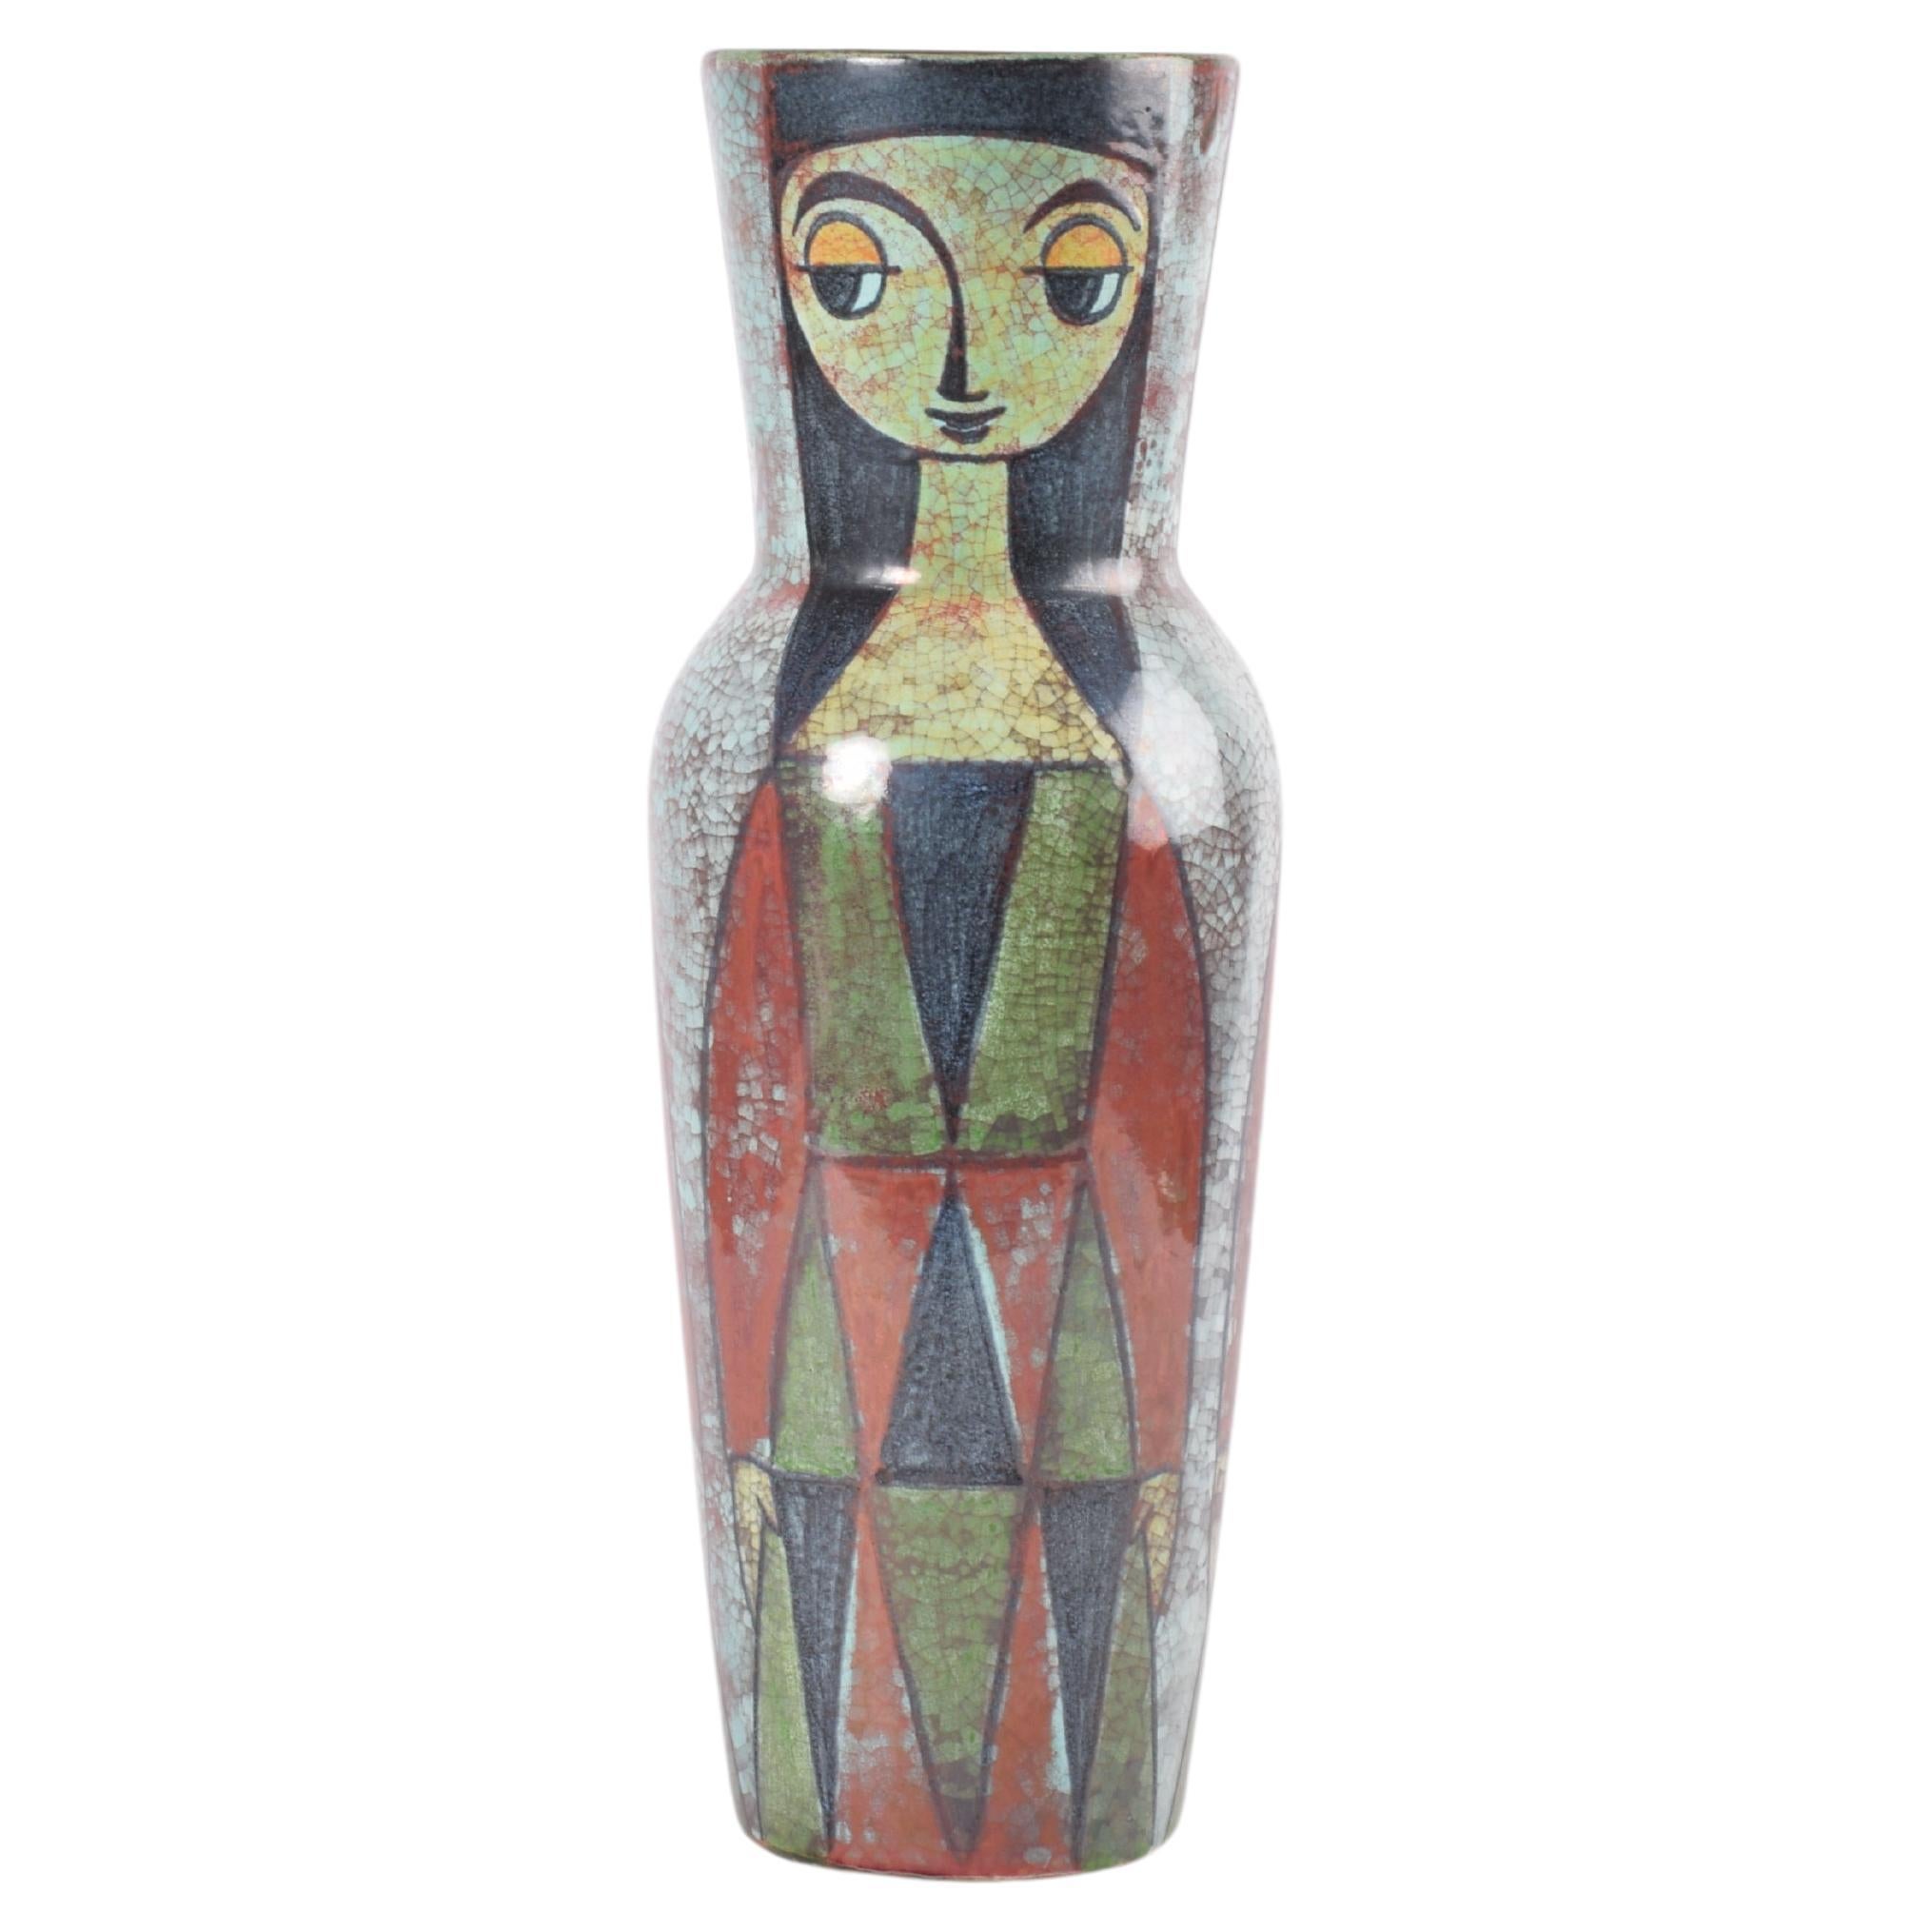 Grand vase coloré de Marianne Starck pour MA&S Persia Glaze, danois des années 1960